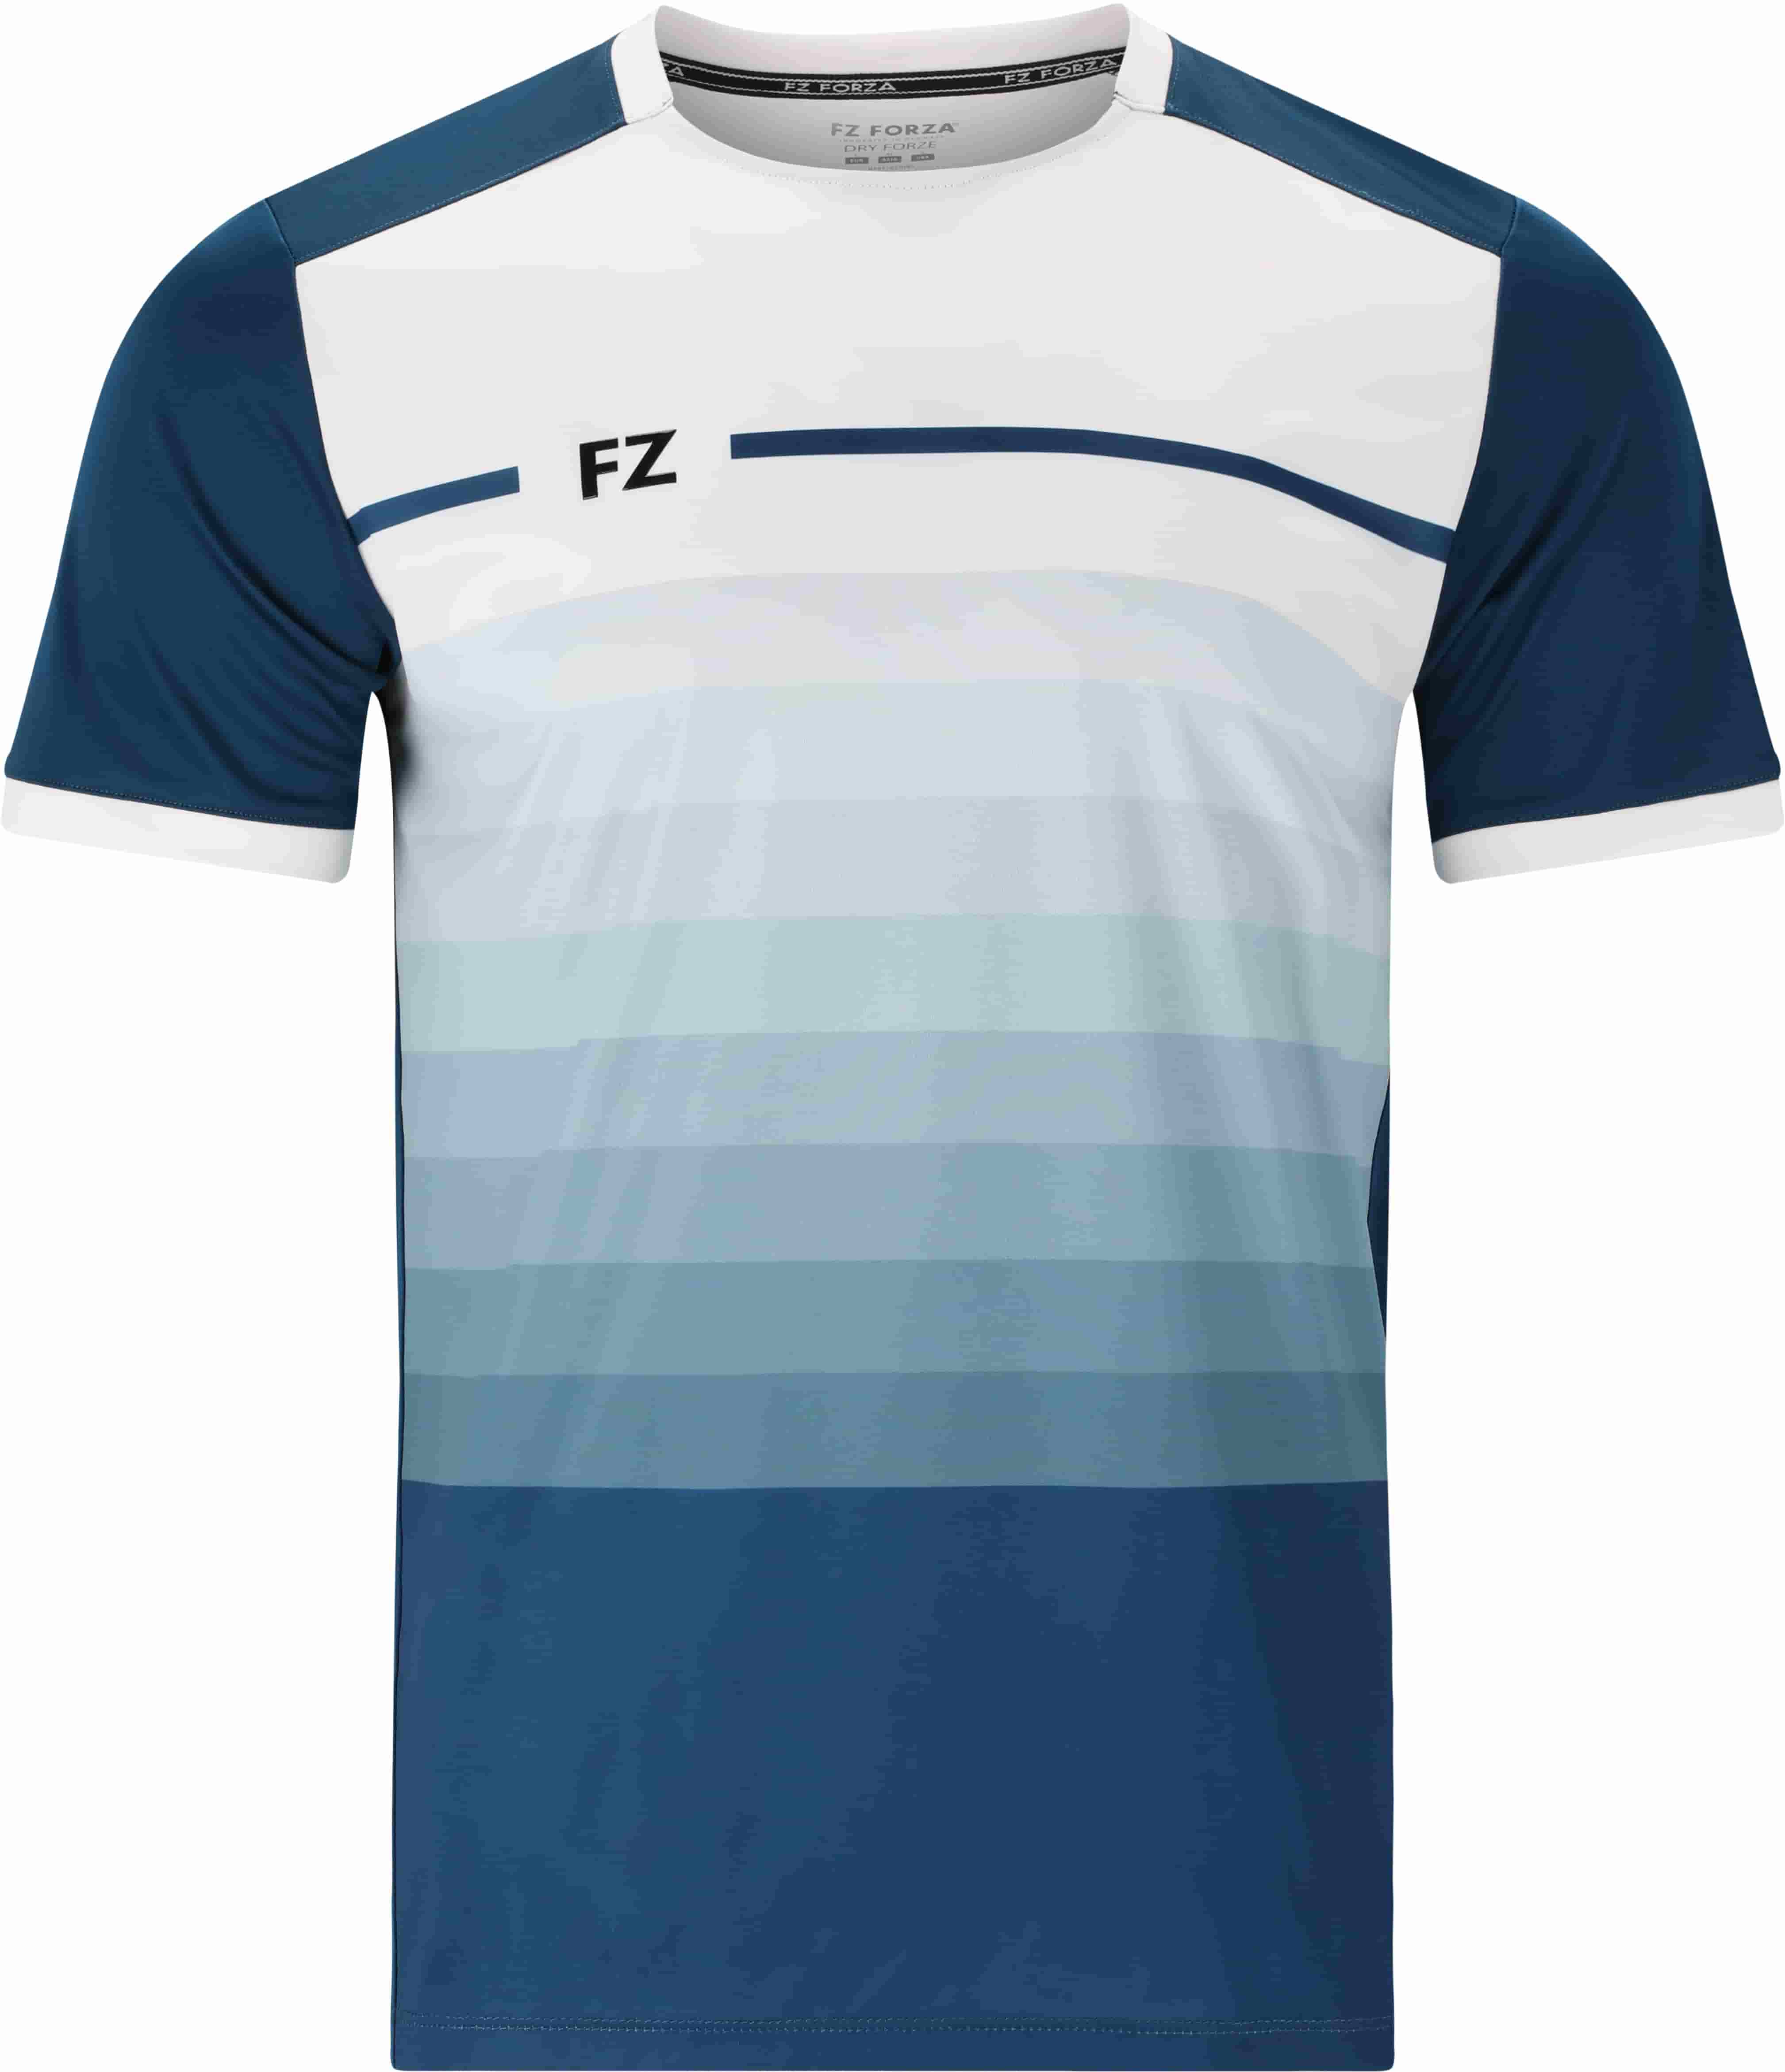 FZ FORZA Alberti M T-Shirt - Blau